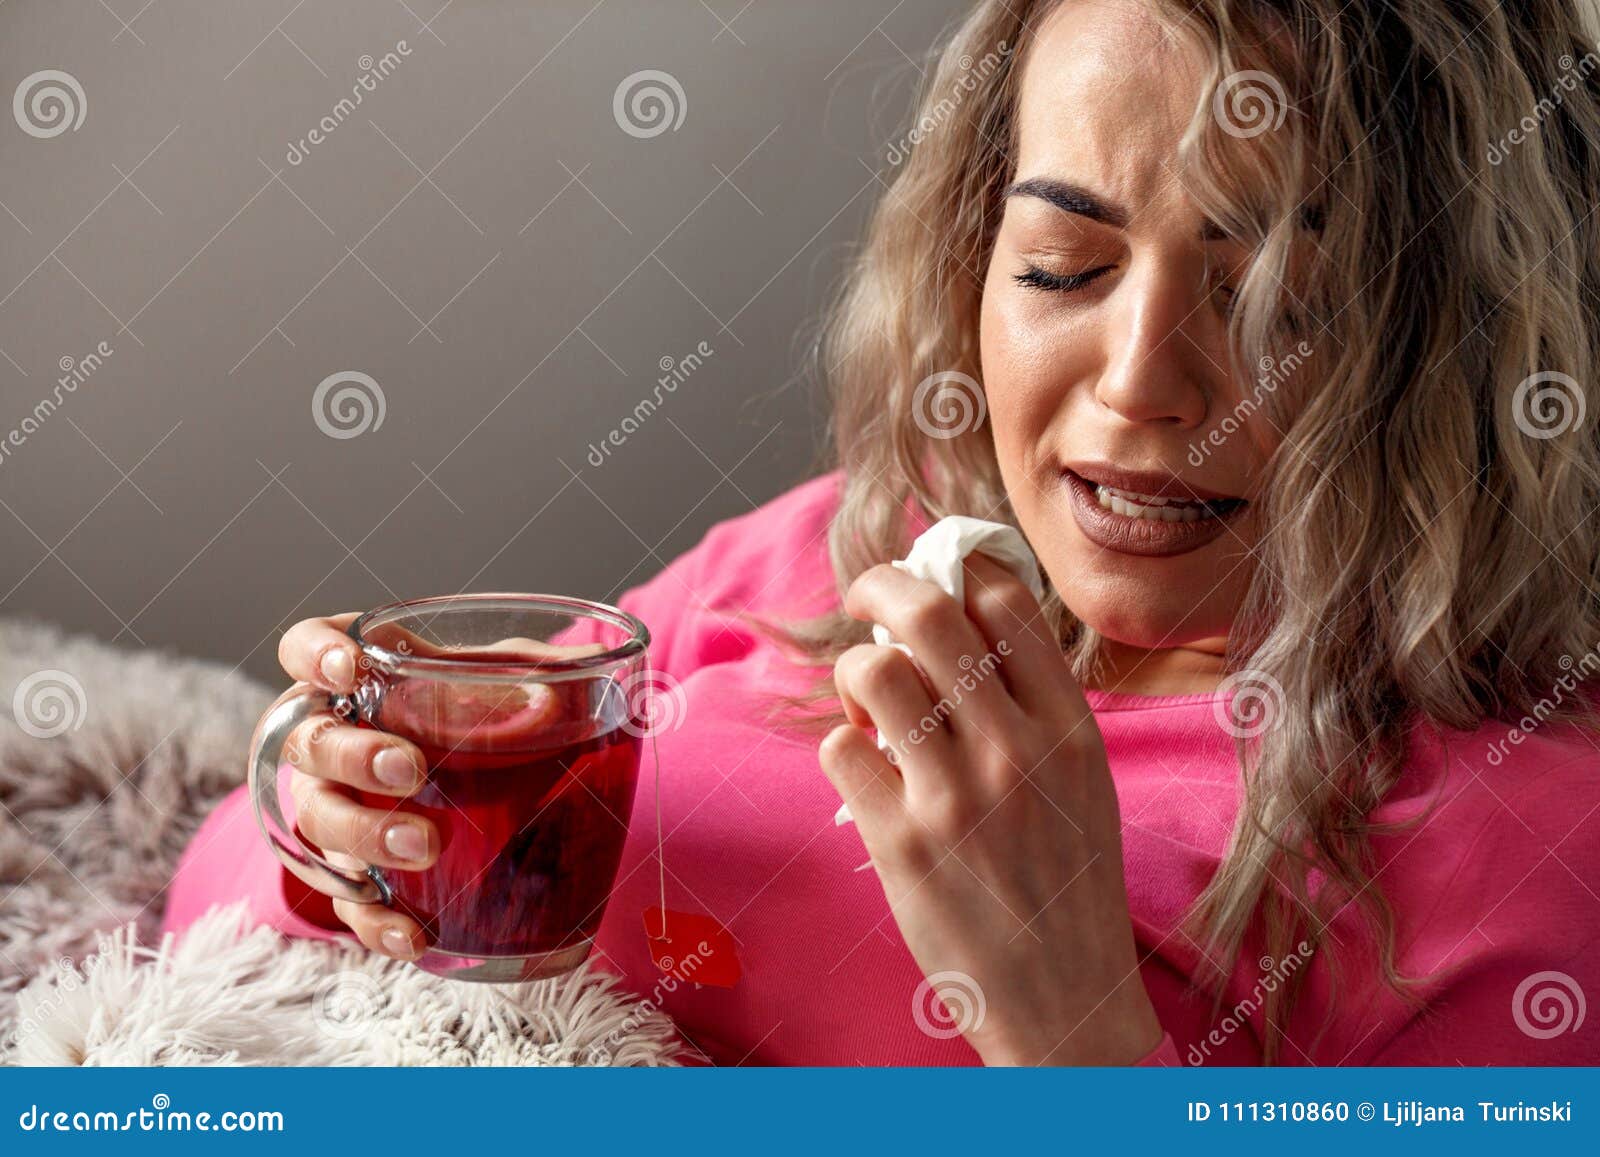 При температуре пьют горячий чай. Фото женщина заболела. Болеющая женщина картинки. Фото девушки с температурой домашних условиях.